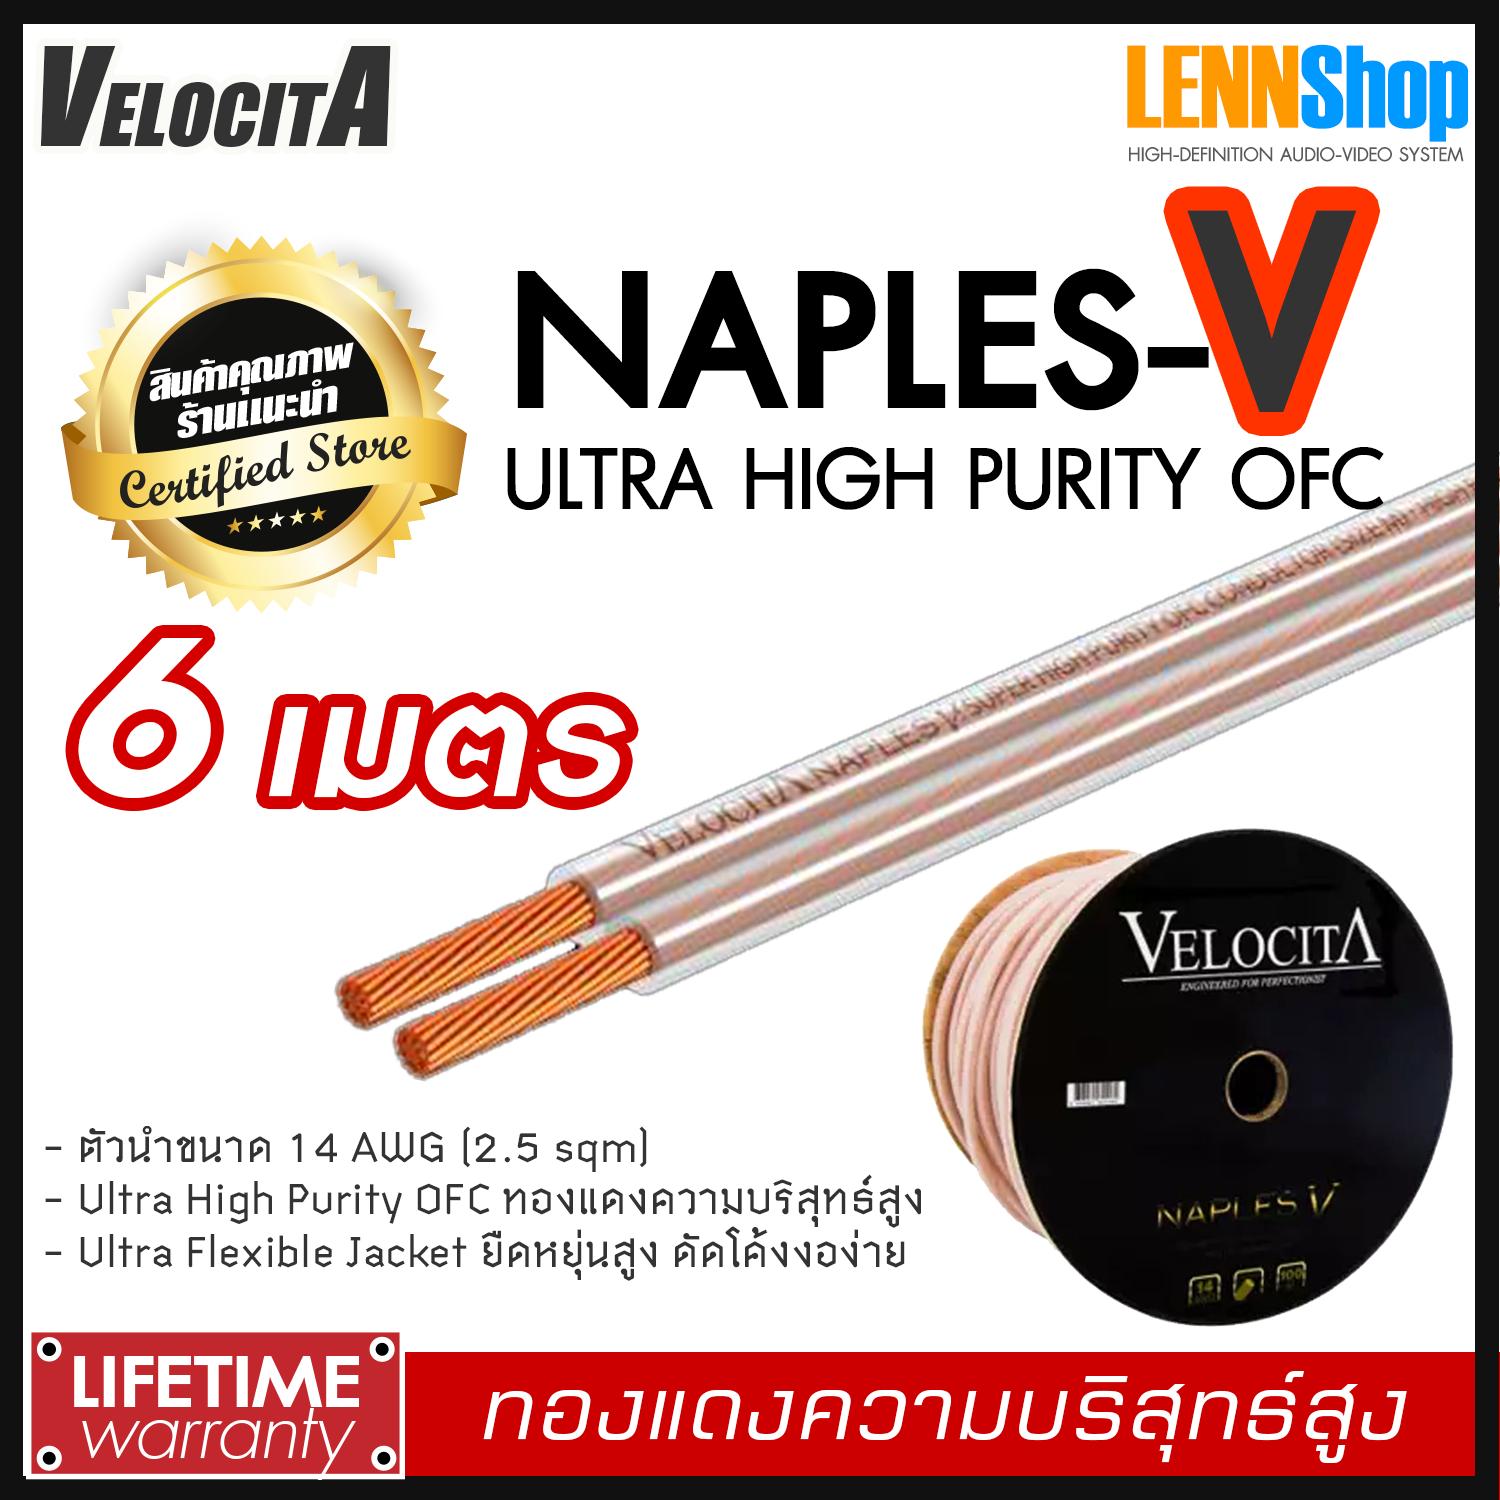 VELOCITA : NAPLES V สายลำโพง Ultra High Purity OFC ความบริสุทธ์สูง ความยาว ตั้งแต่ 1 - 100 เมตร เลือกได้หลายขนาด สินค้าของแท้ 100% จากตัวแทนจำหน่ายอย่างเป็นทางการ จำหน่ายโดย LENNSHOP / Velocita Naple V / naple V สี 6m สี 6m